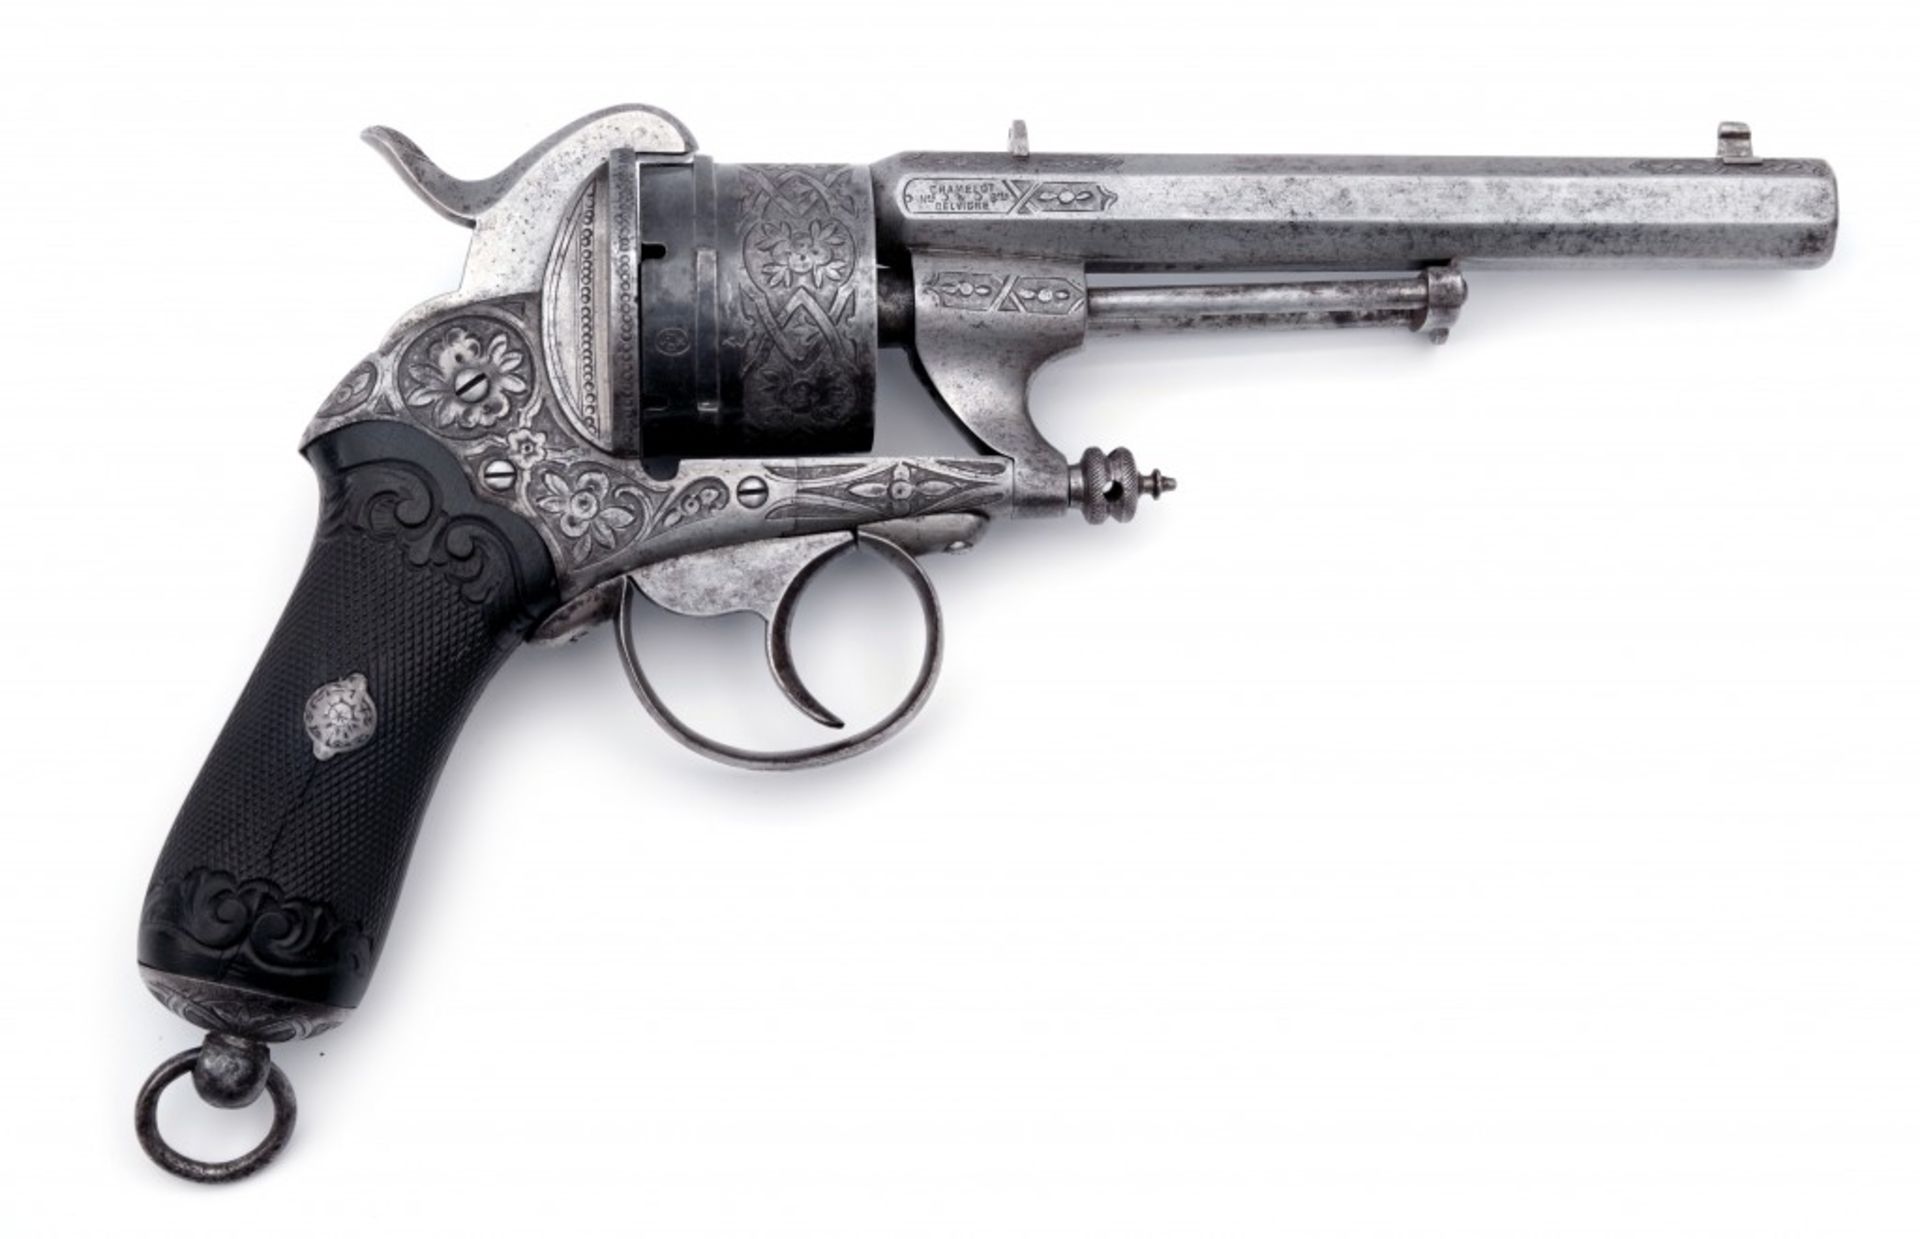 A Chamelot & Delvigne pin fire revolver